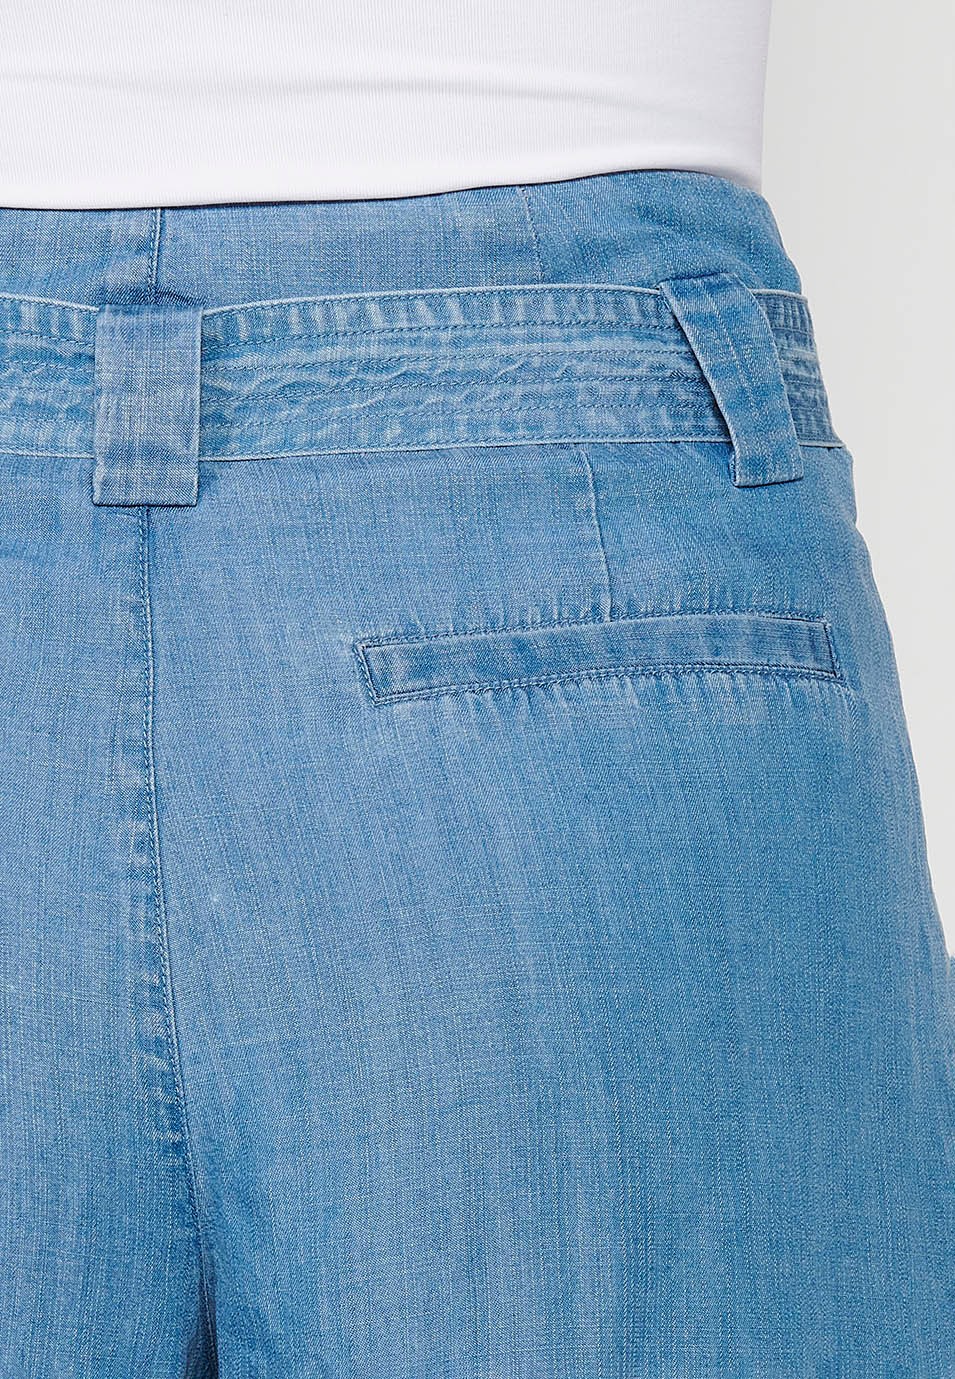 Pantalons short, cintura ajustable amb cinta, color blau per a dona